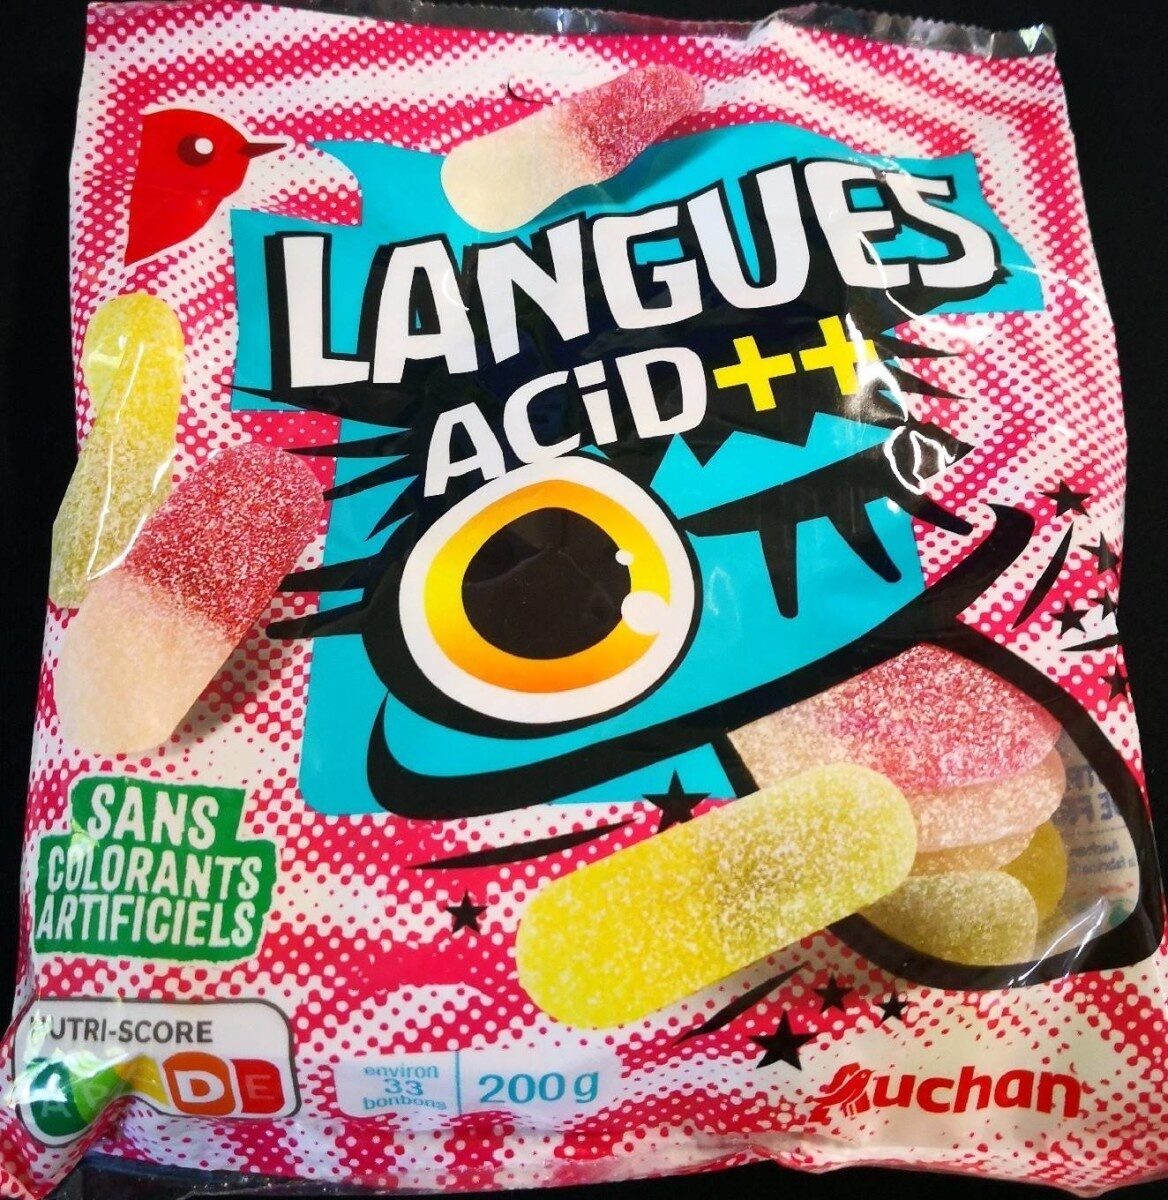 Langues acid++ - Produit